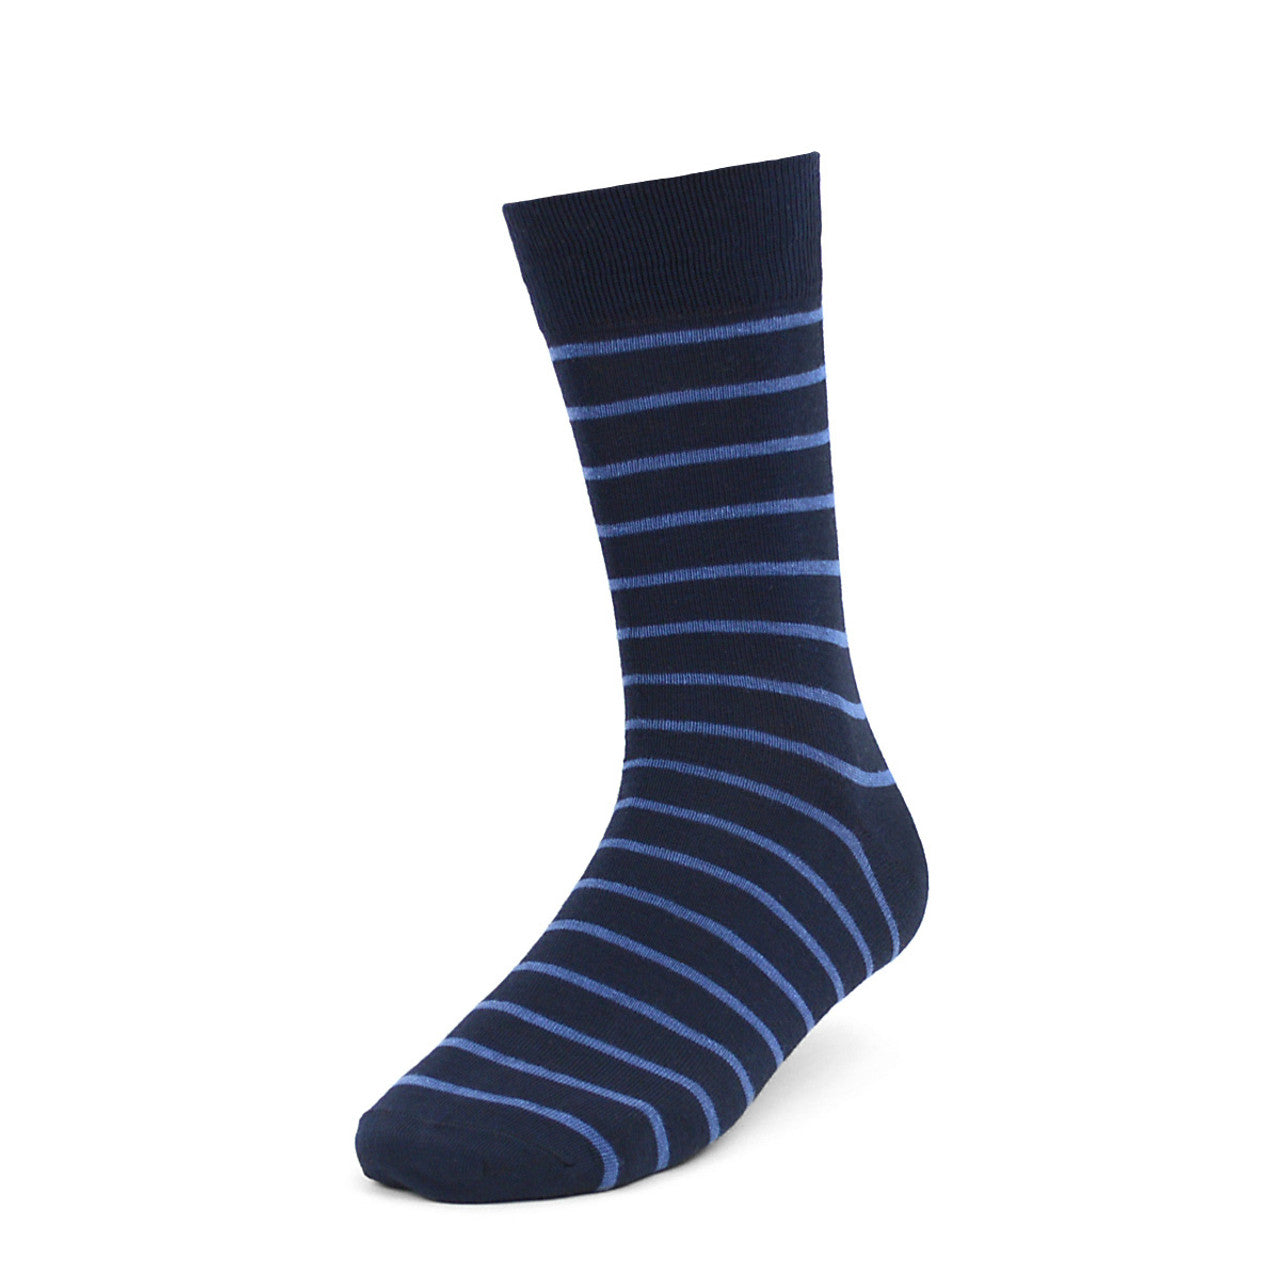 Men's Blue Striped and Dot Crew Socks - 3 Pack